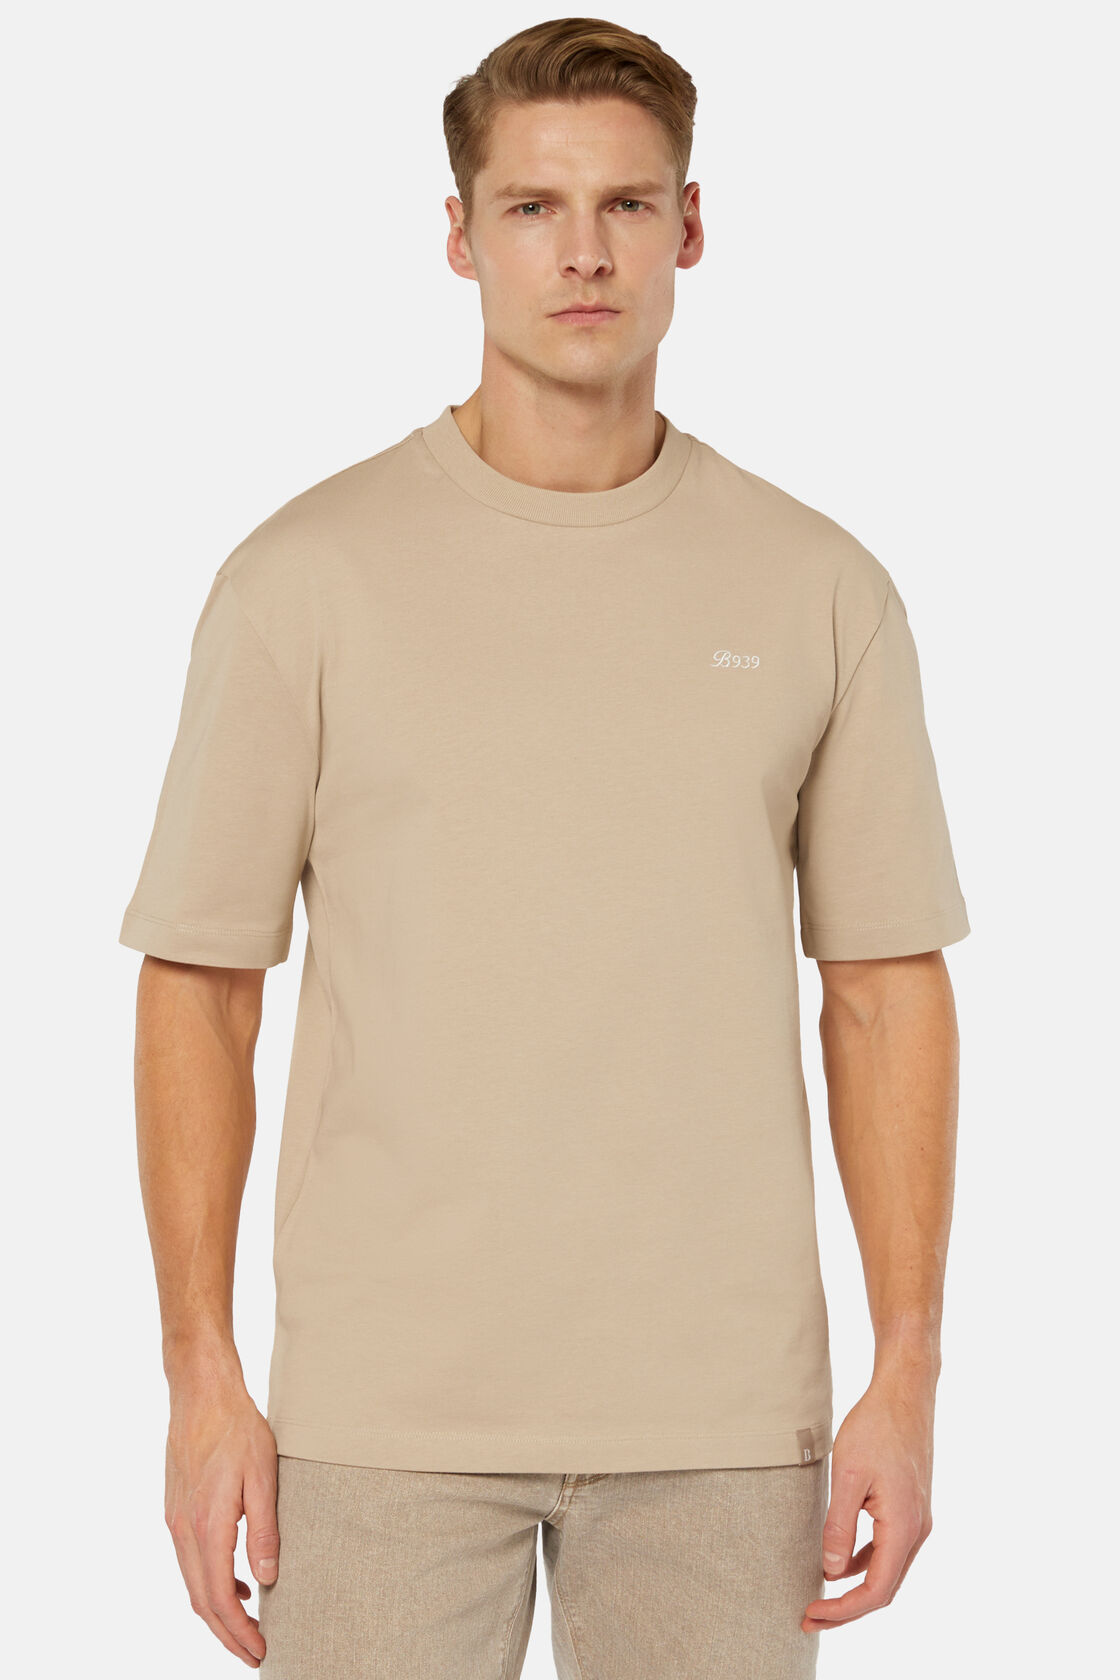 Κοντομάνικο μπλουζάκι από οργανικό βαμβάκι, Beige, hi-res